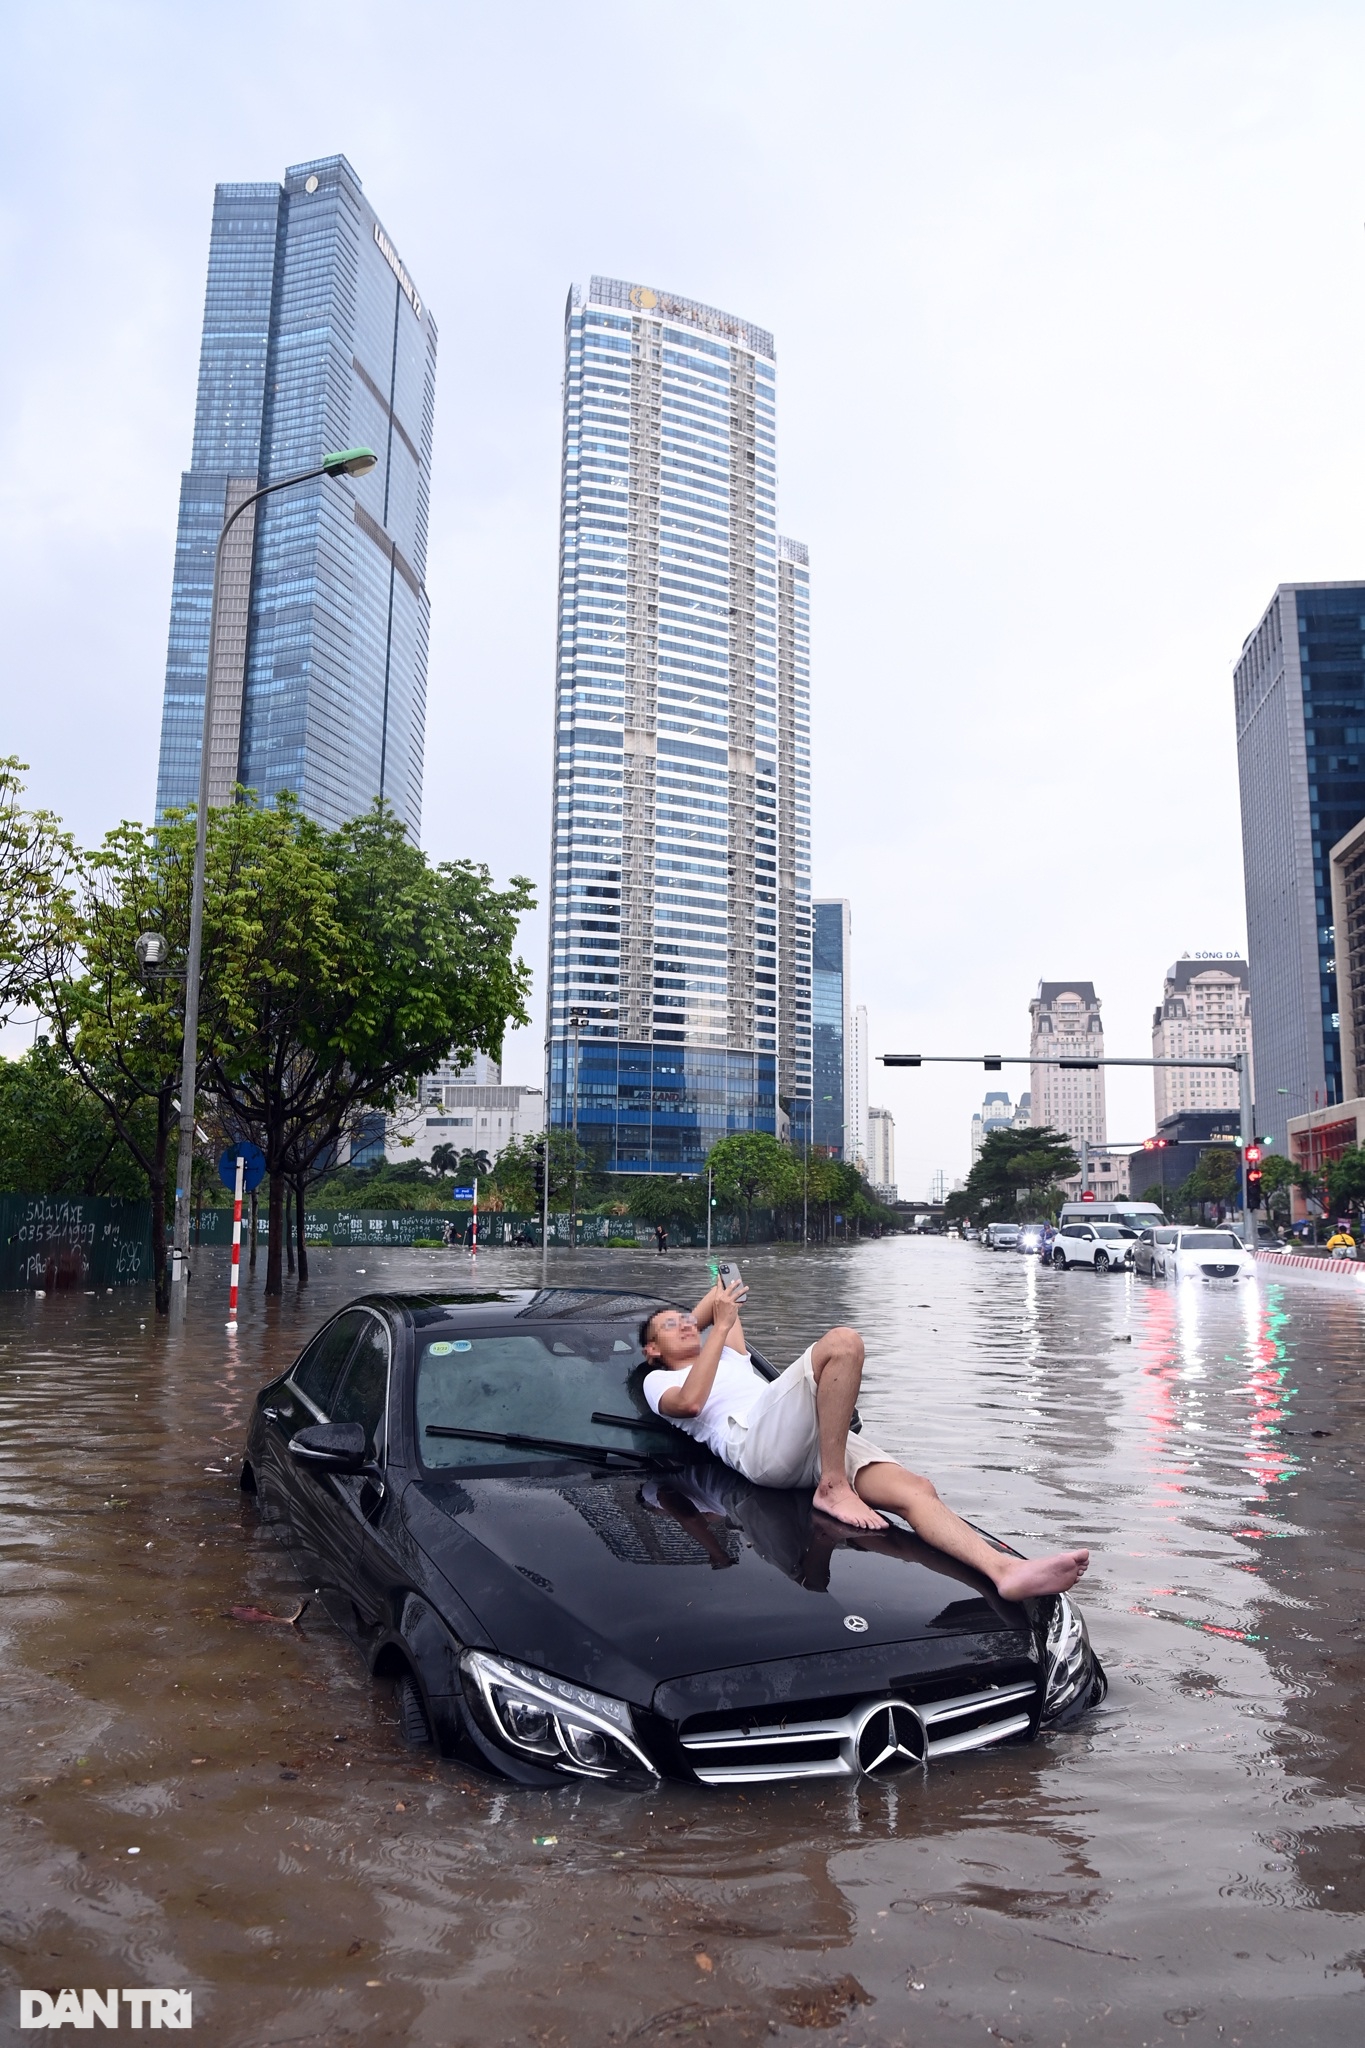 Cận cảnh nhiều xe sang mersedes ngập sâu trong nước sau mưa lớn ở Hà Nội - Ảnh 4.